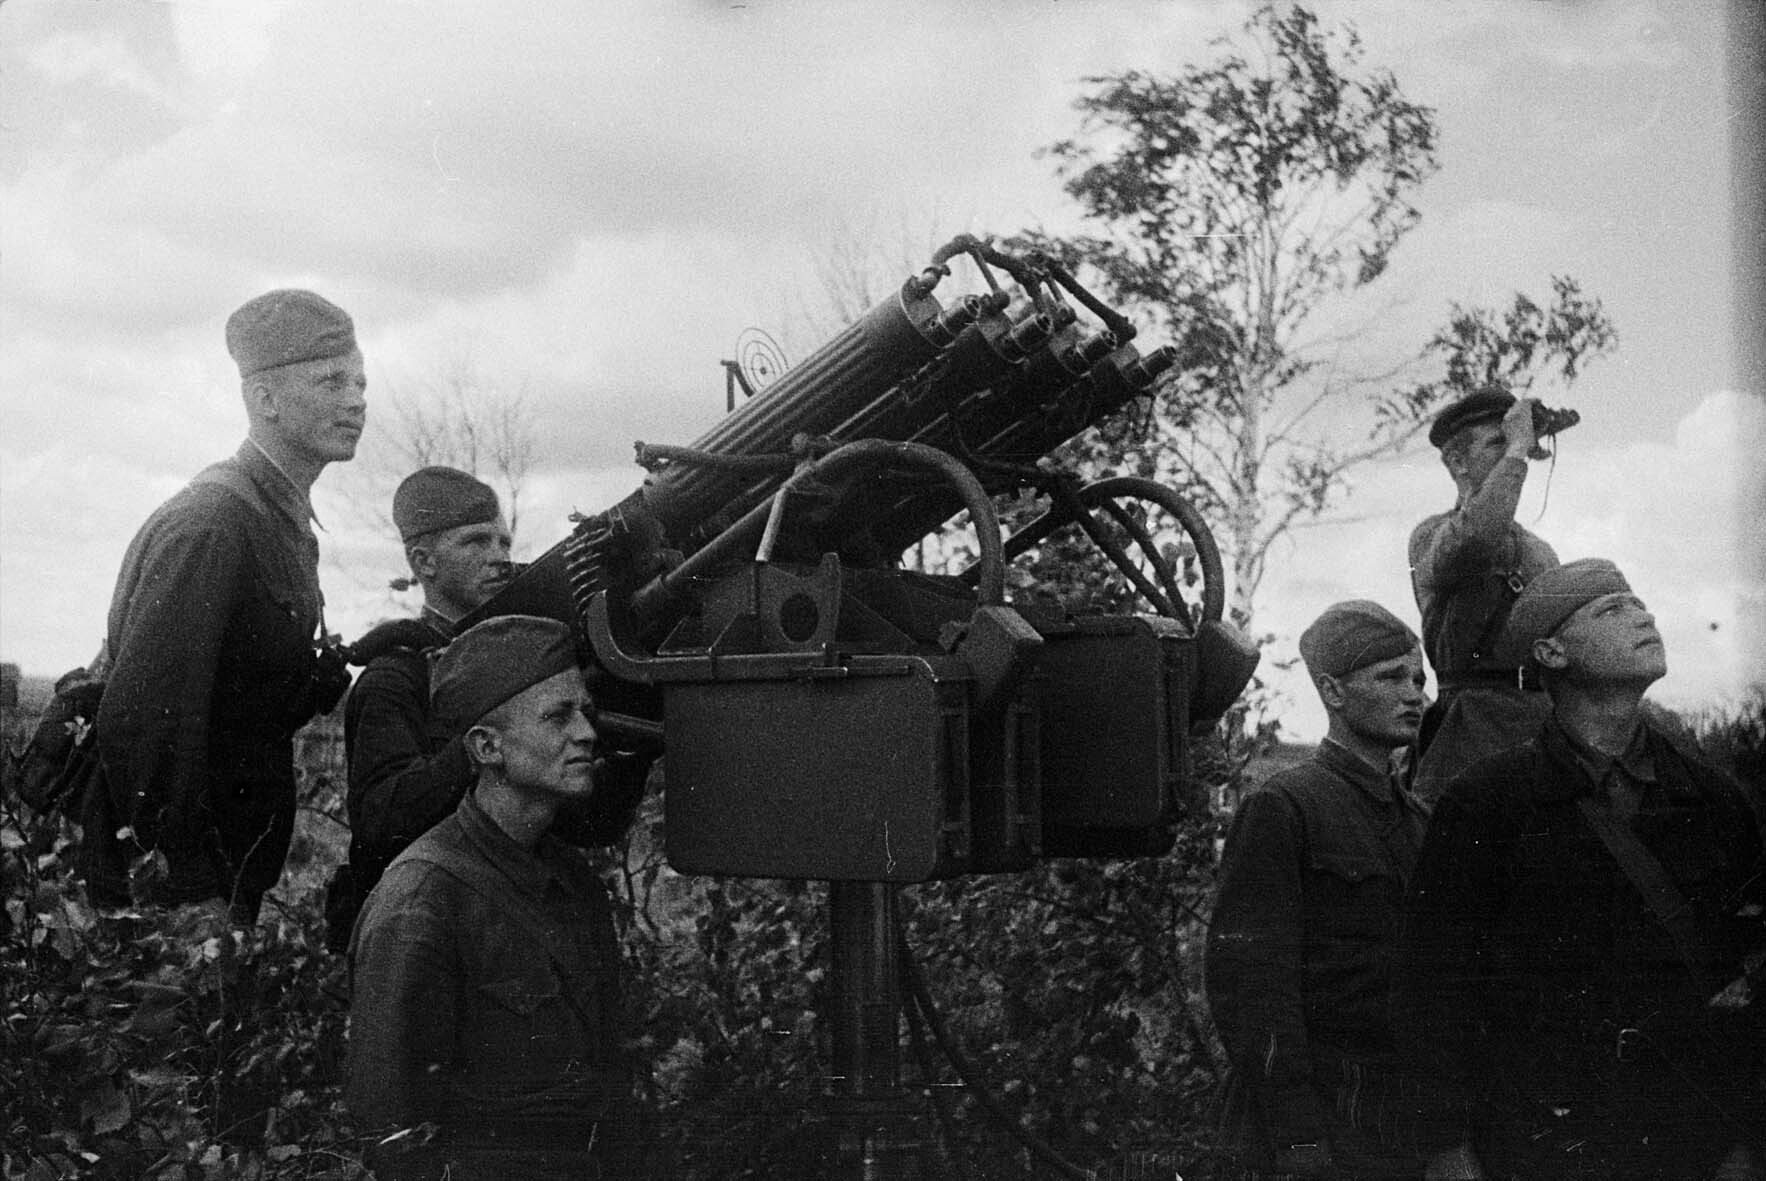 Fotografie: Sowjetische Flak im Einsatz, Kalininer Front, 4. Juli 1942 (Museum Berlin-Karlshorst RR-P)